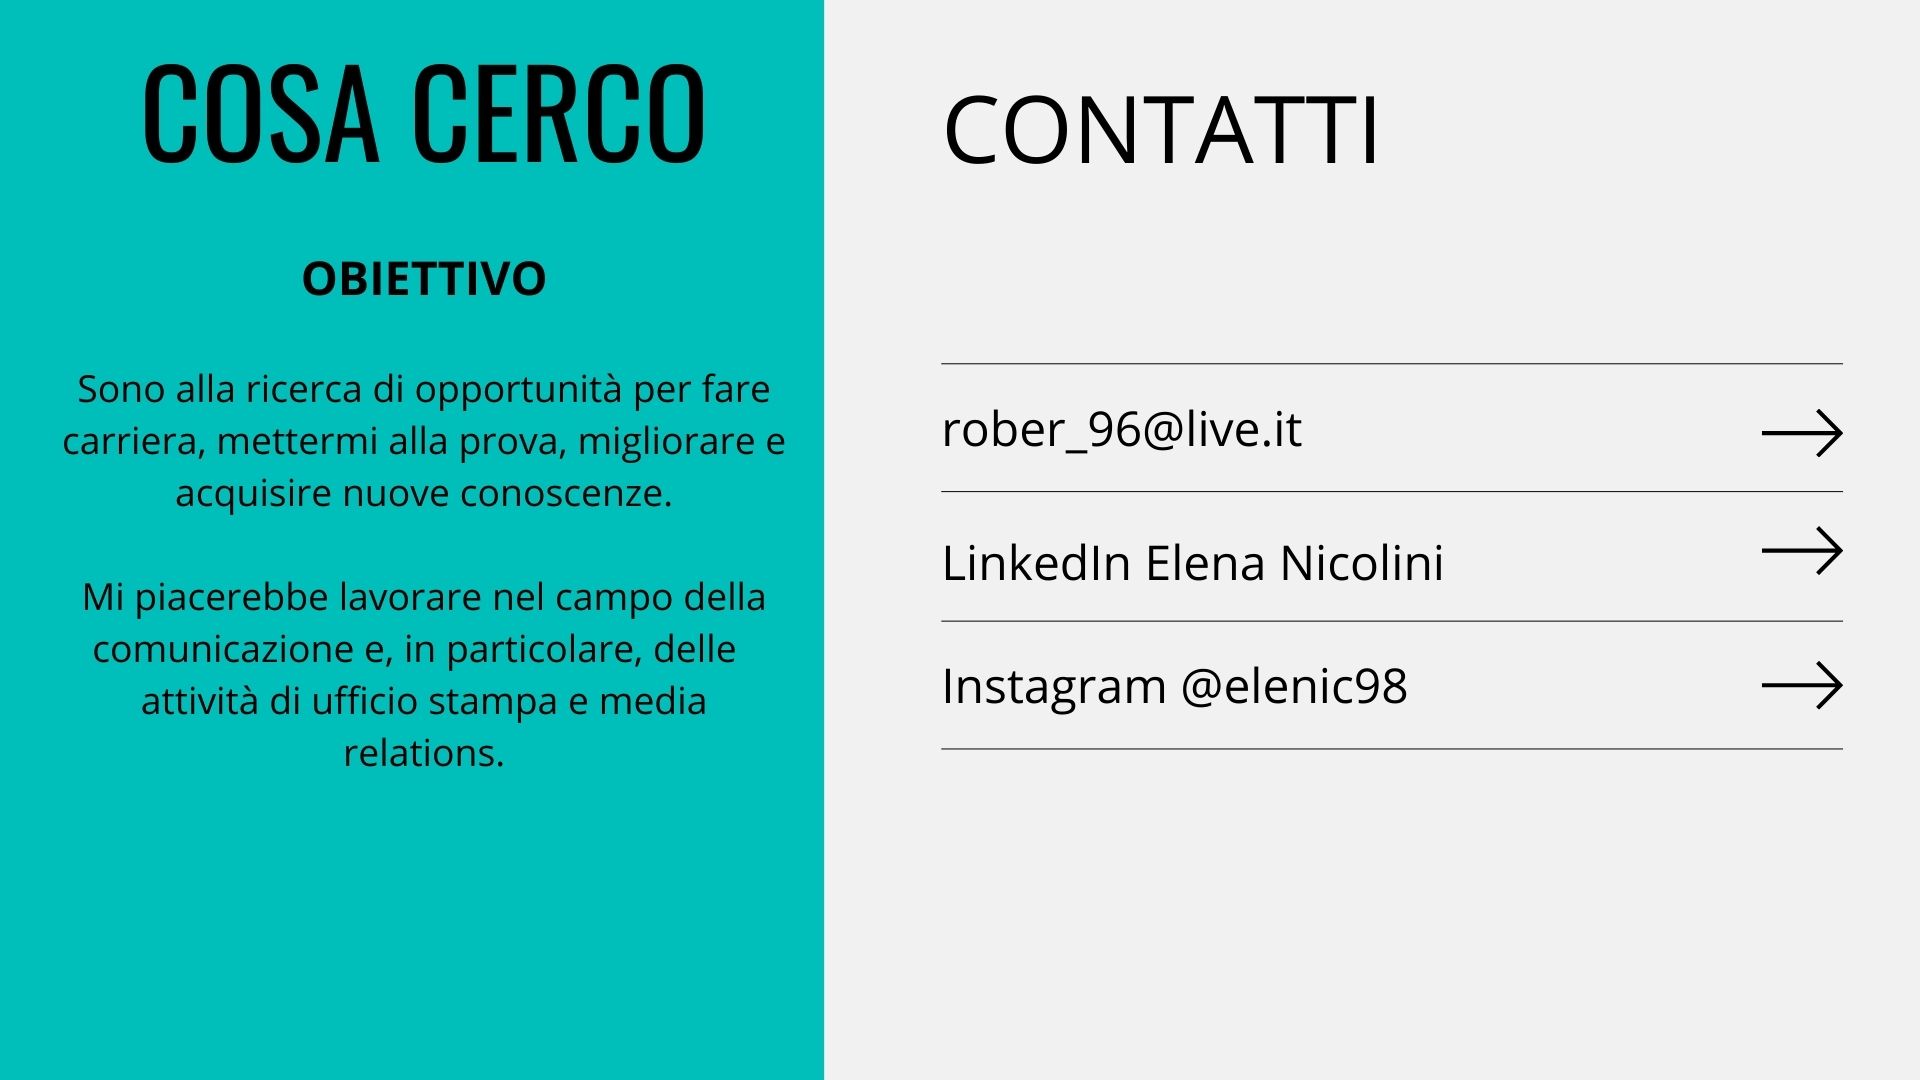 CONTATTI

 

 

rober_96@live.it —>
LinkedIn Elena Nicolini —
Instagram @elenic98 —